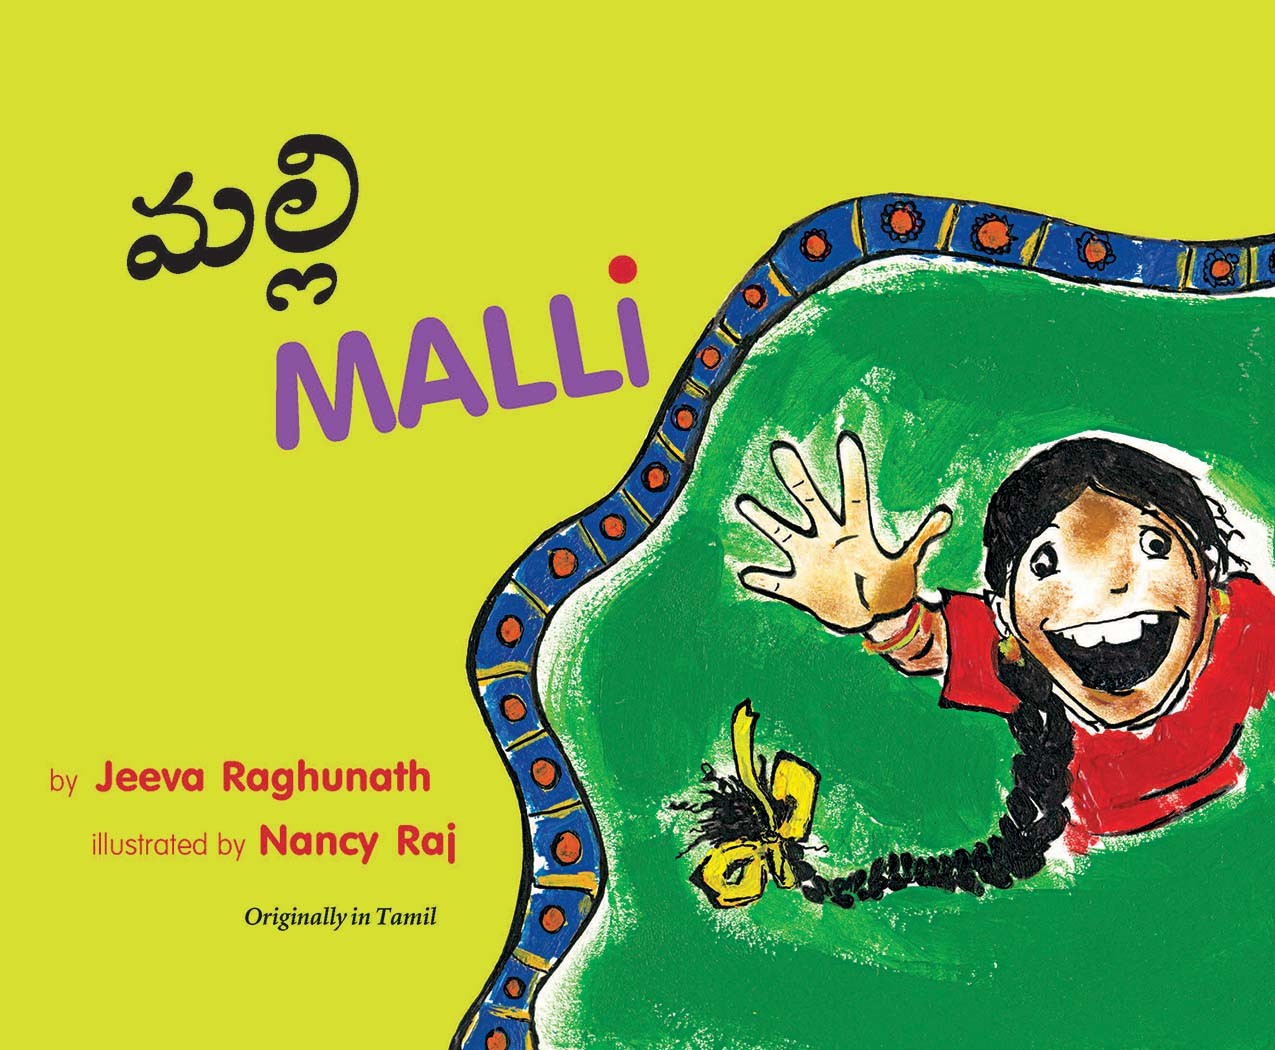 Malli/Malli (English-Telugu)